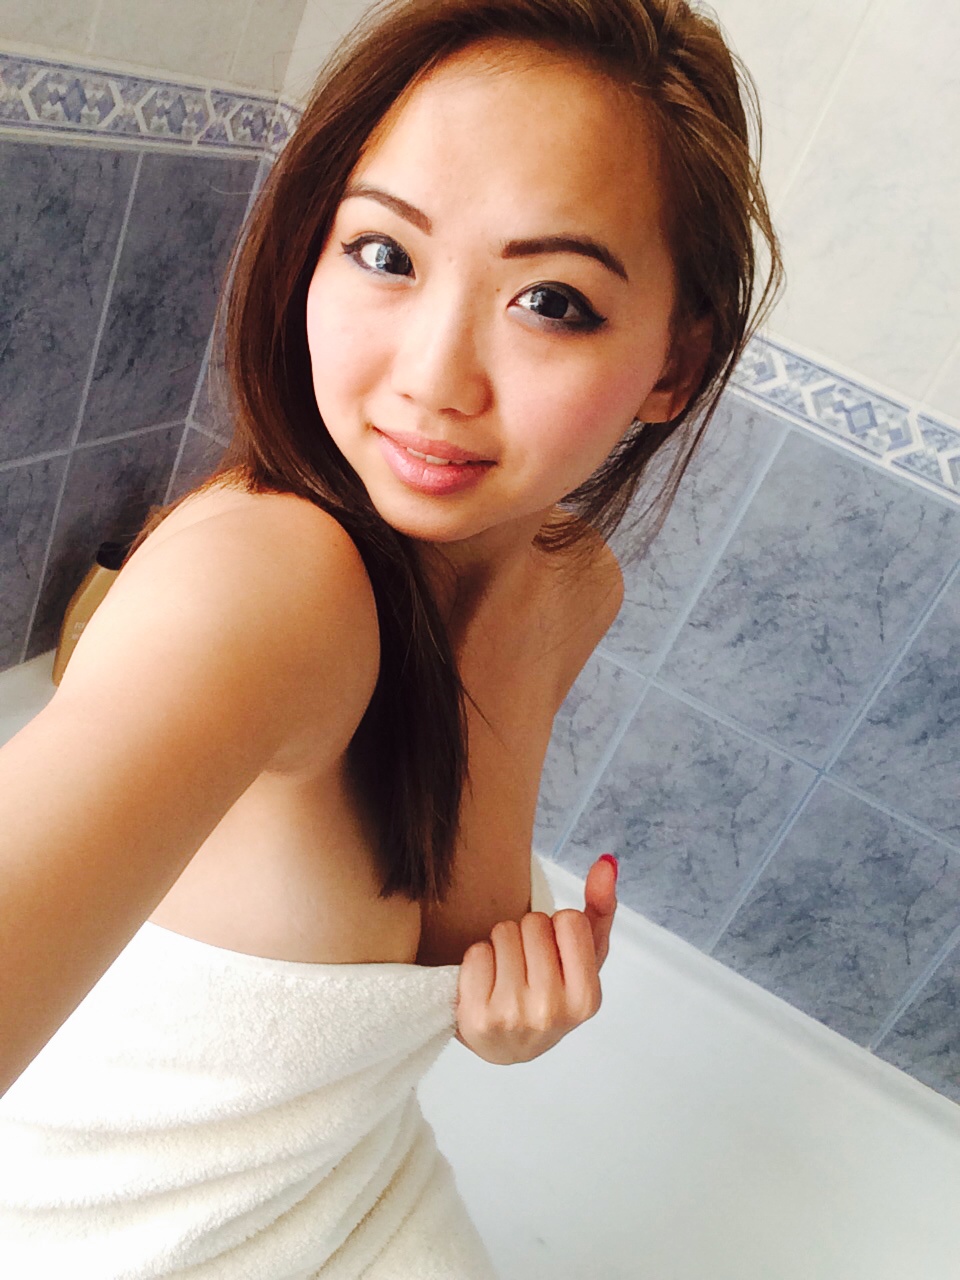 best of Girl asian in shower hot naked